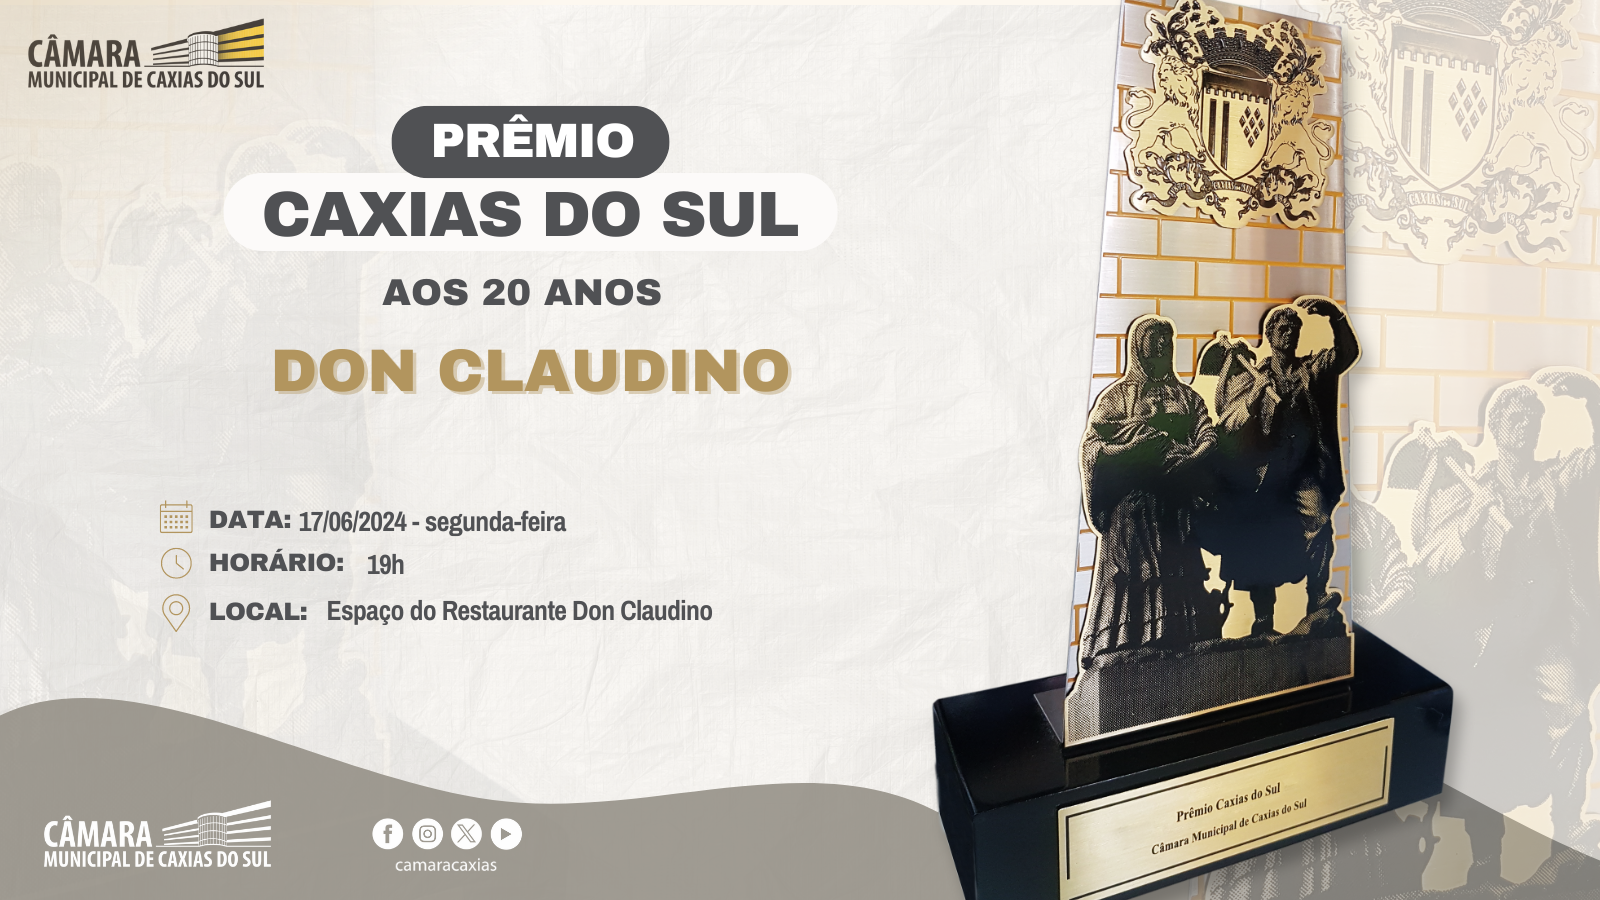 Leia mais sobre Don Claudino Casa de Eventos receberá Prêmio Caxias do Sul